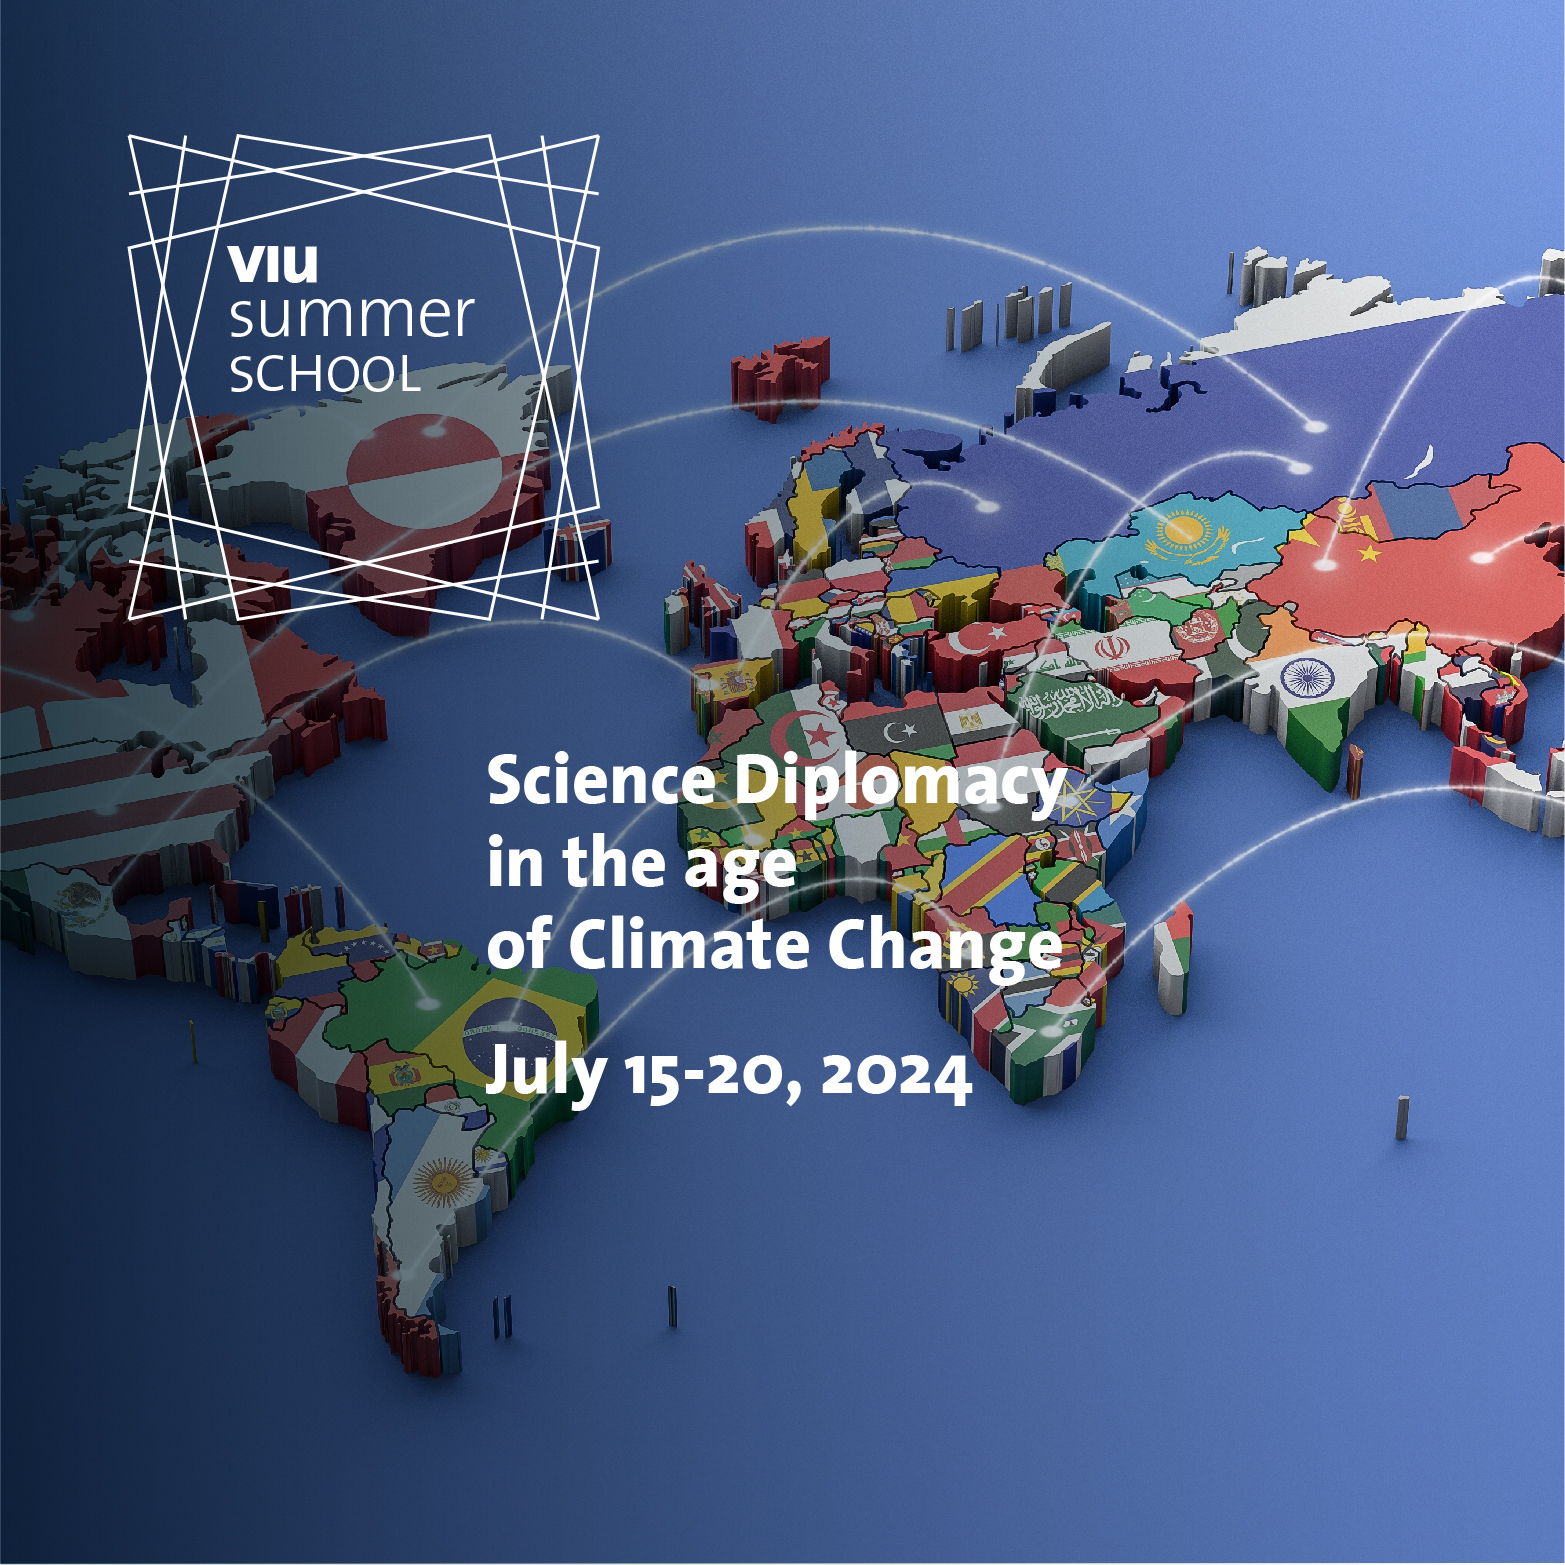 VIU Summer School | Science Diplomacy